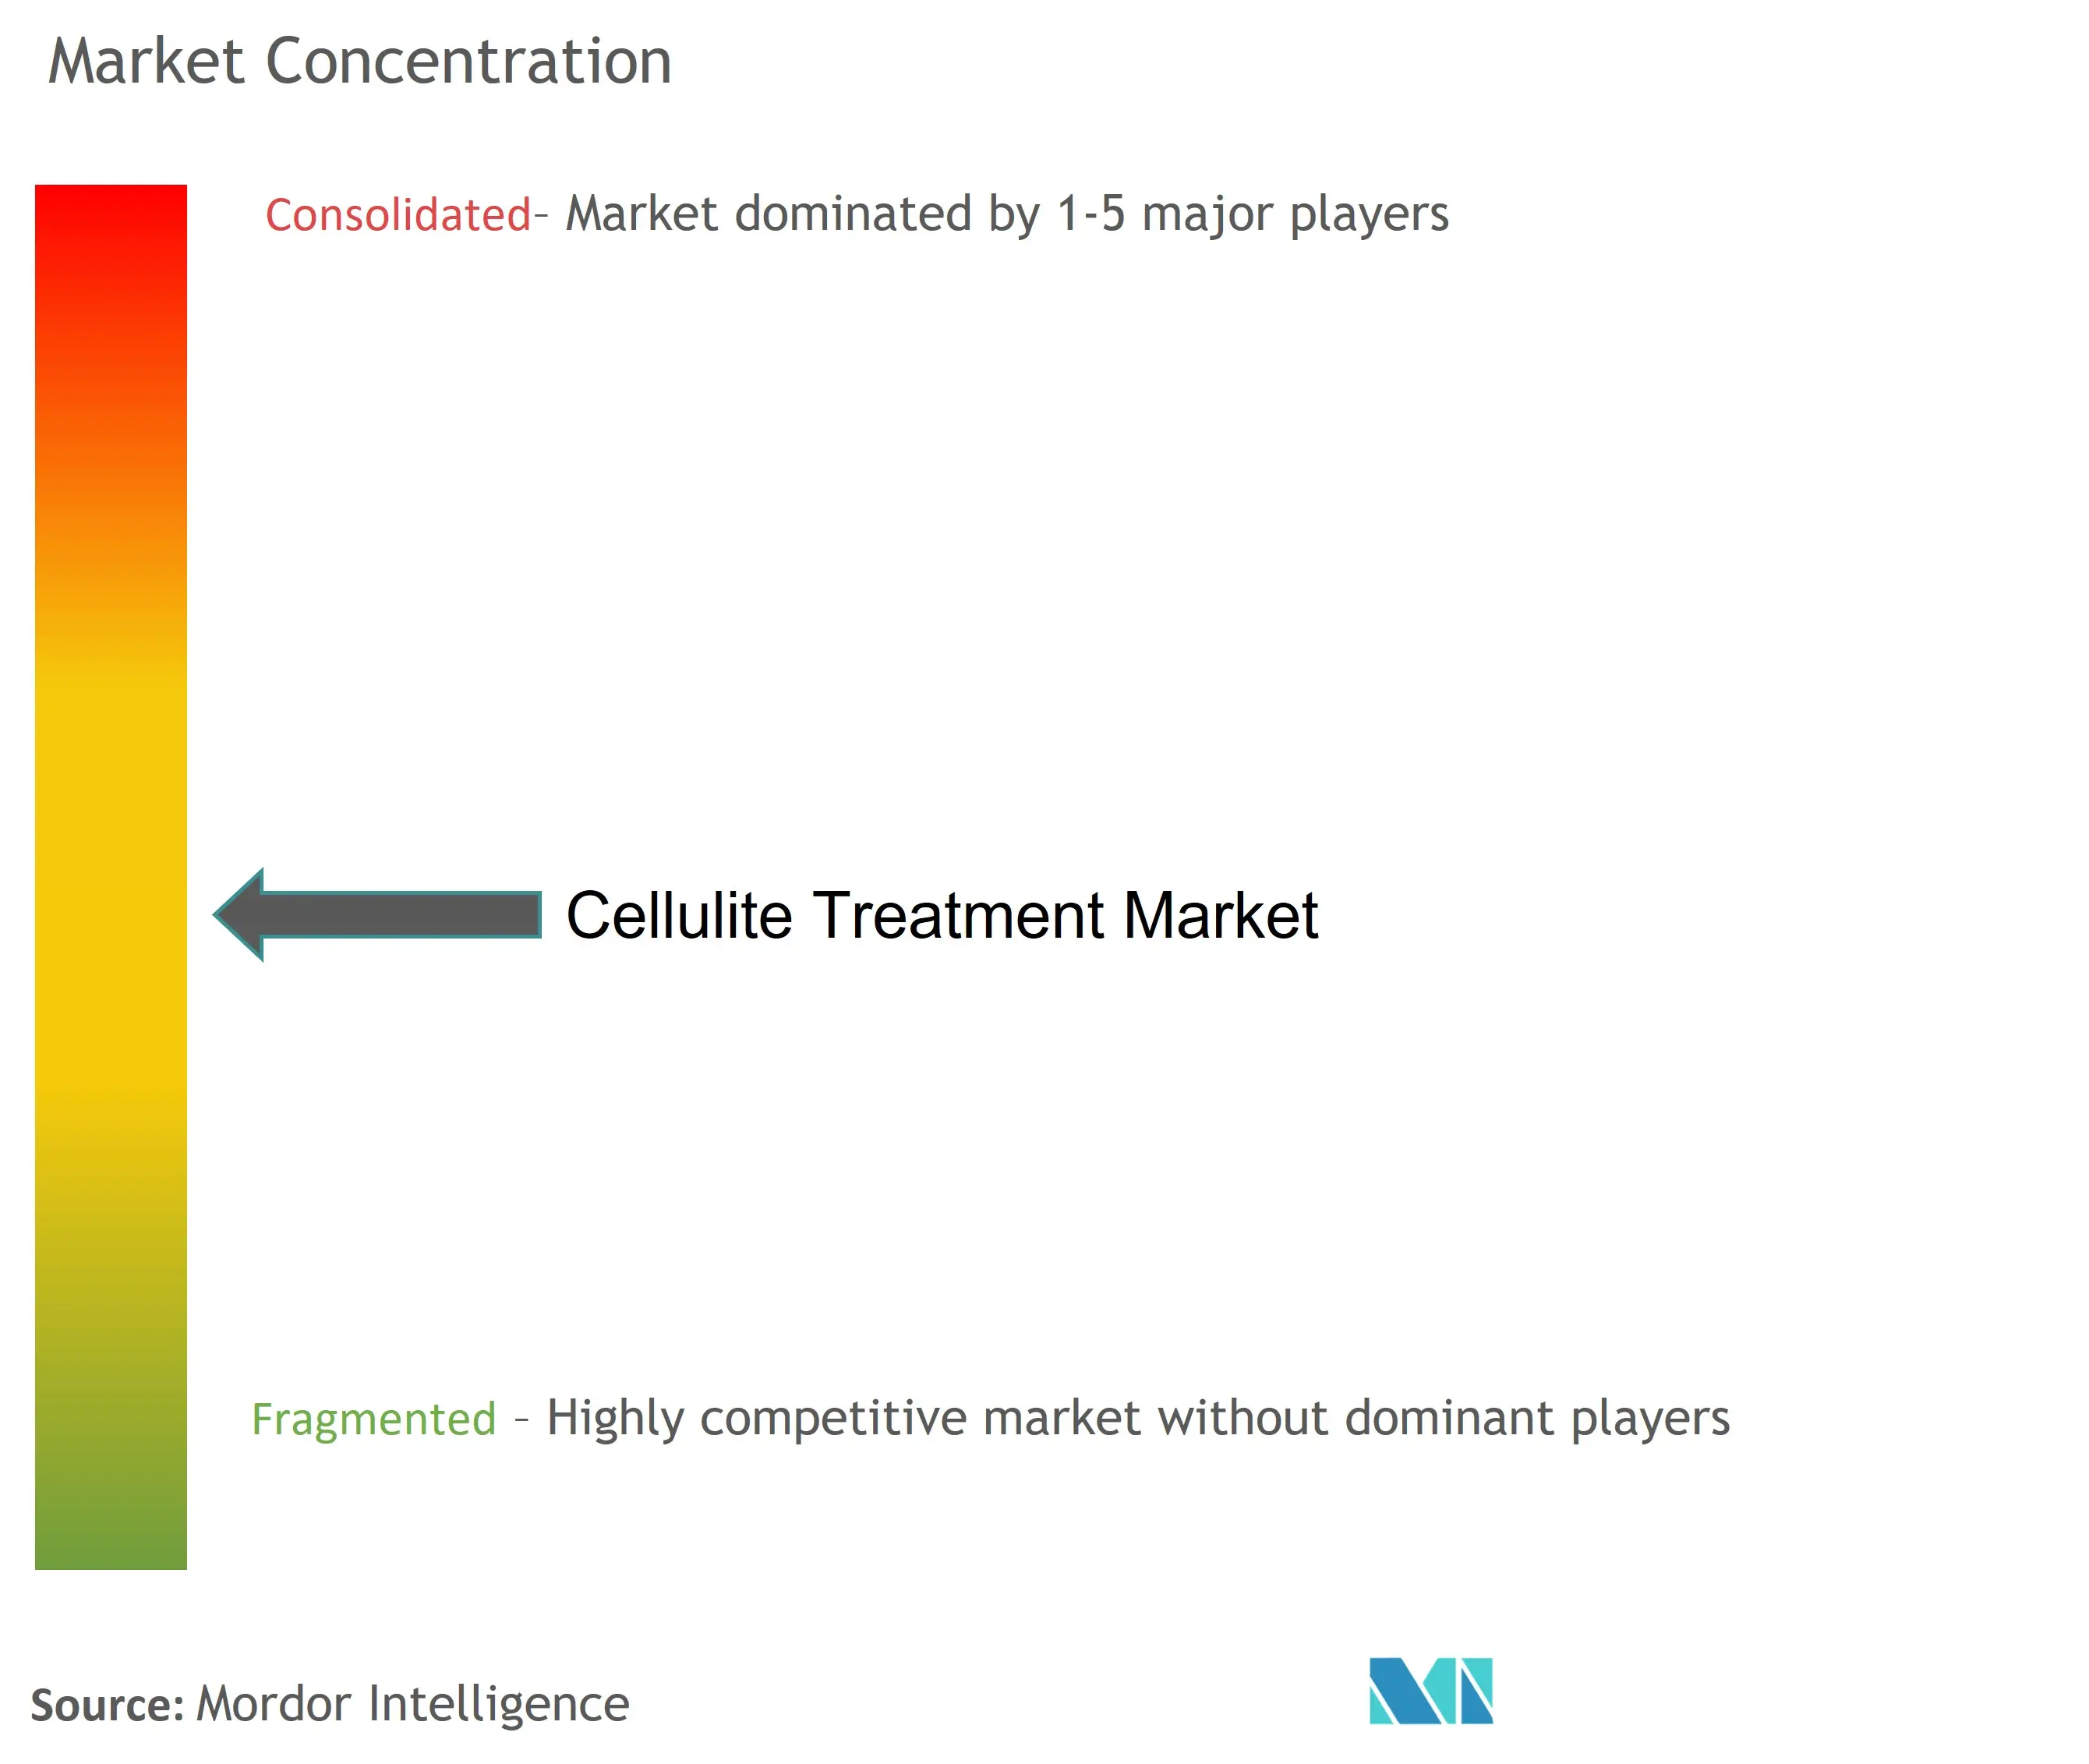 Cellulite Treatment Market Concentration